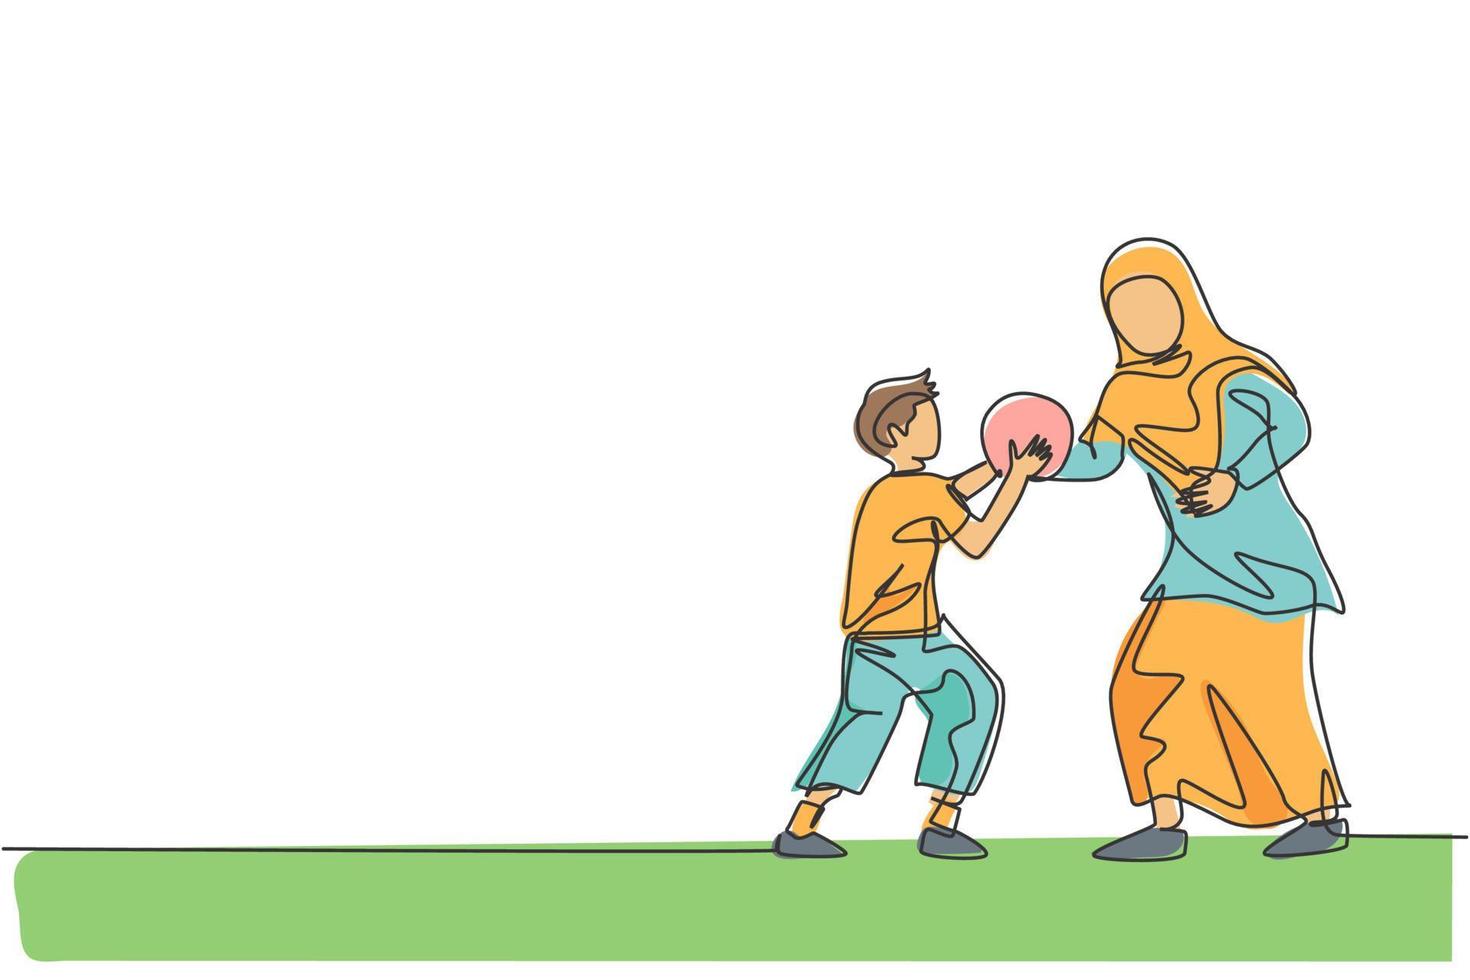 één enkele lijntekening van jonge islamitische moeder die basketbalsport speelt met haar zoon bij openbare parkvectorillustratie. arabisch moslim familie ouderschap concept. modern ononderbroken lijntekeningontwerp vector